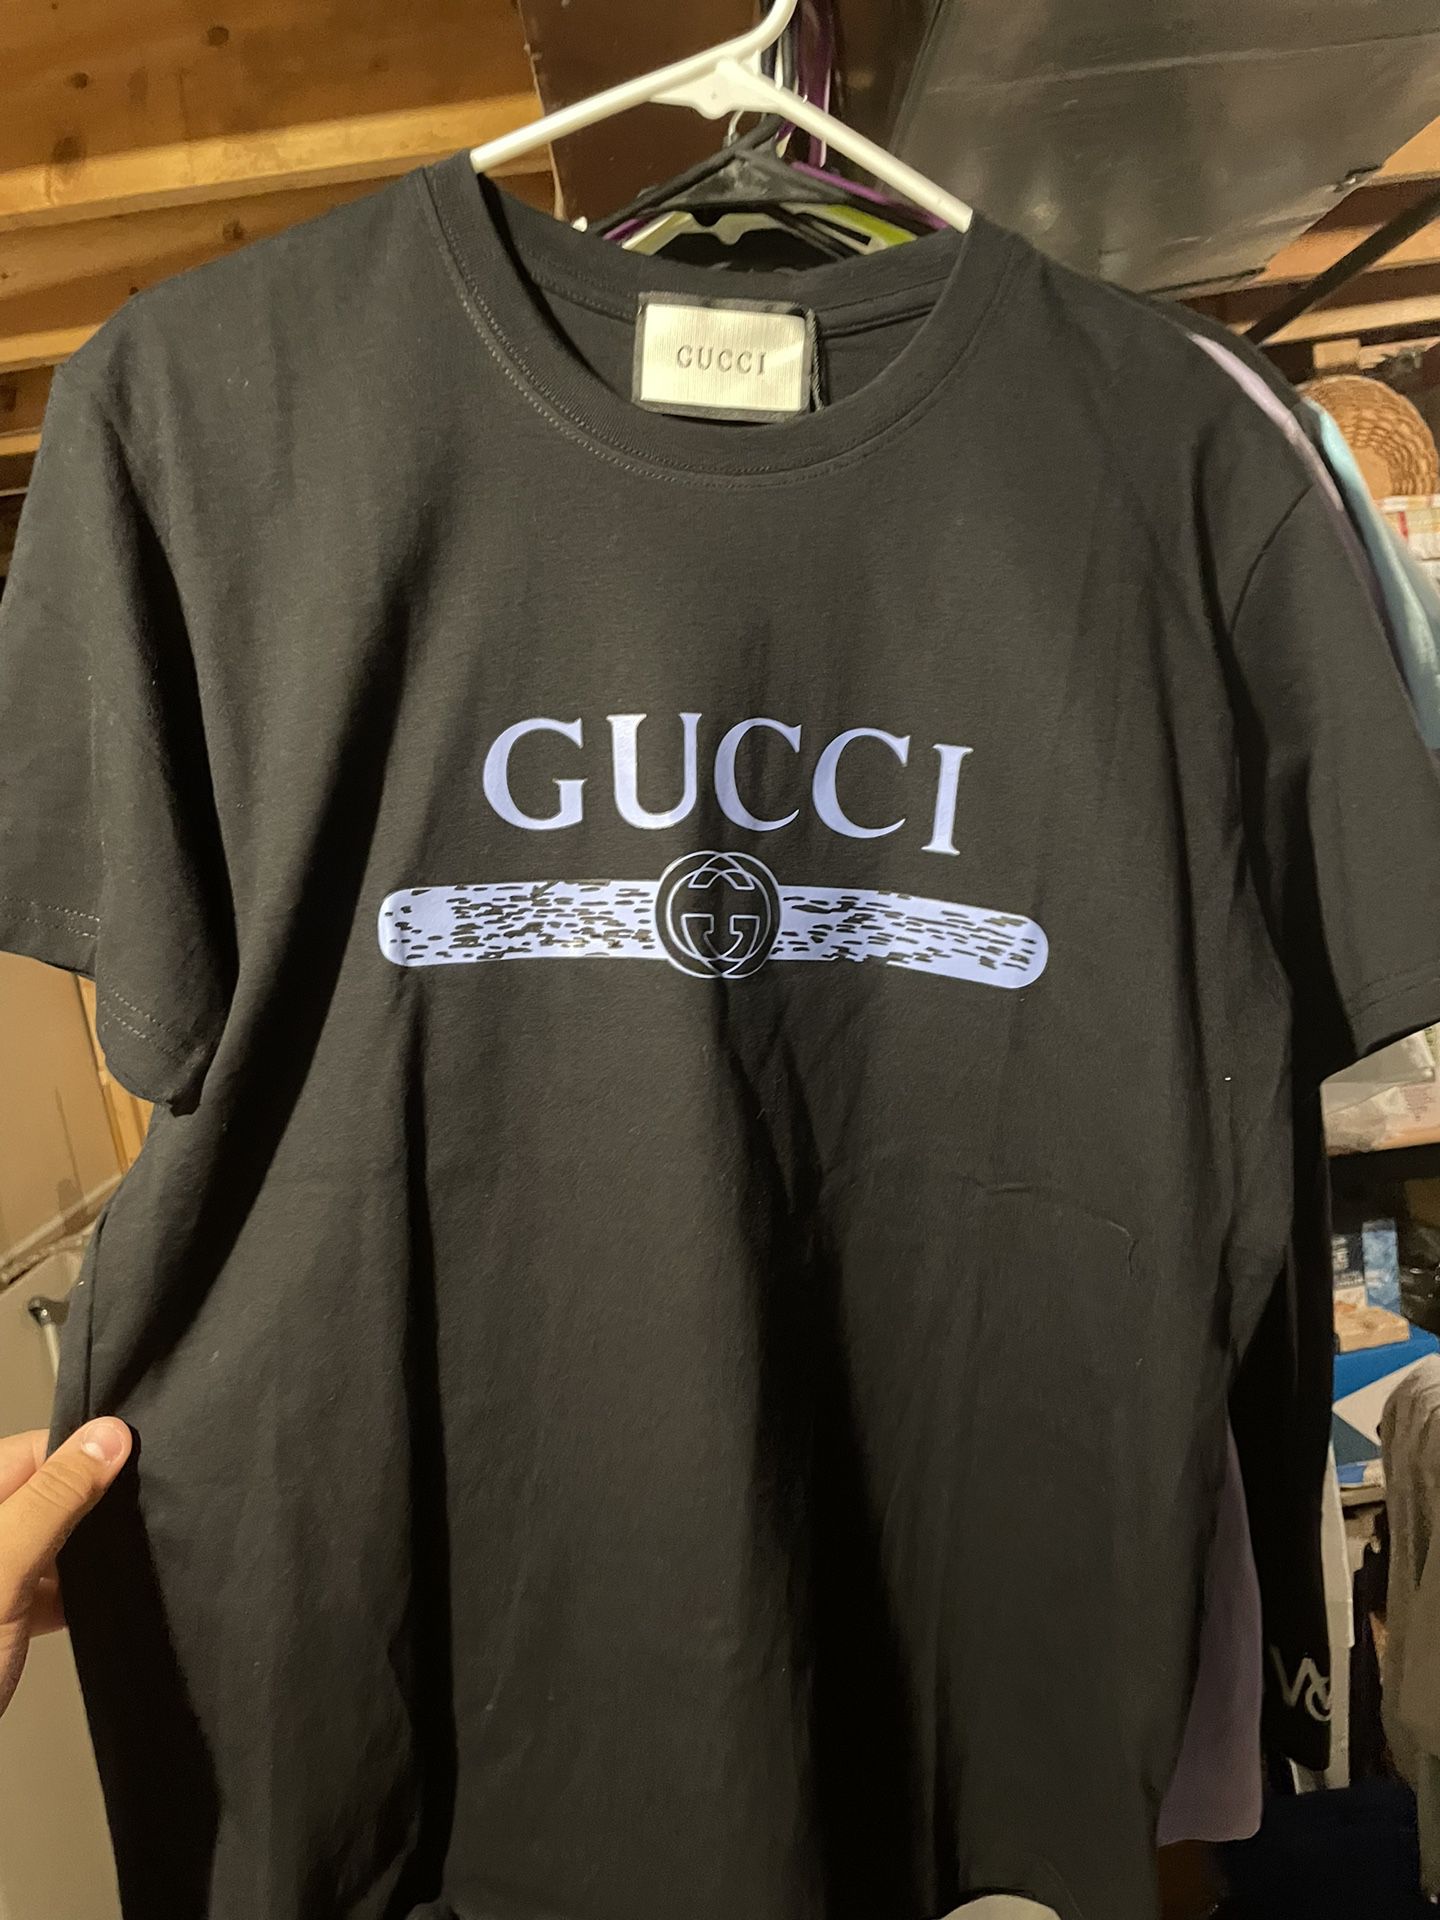 Gucci Shirt Size Large